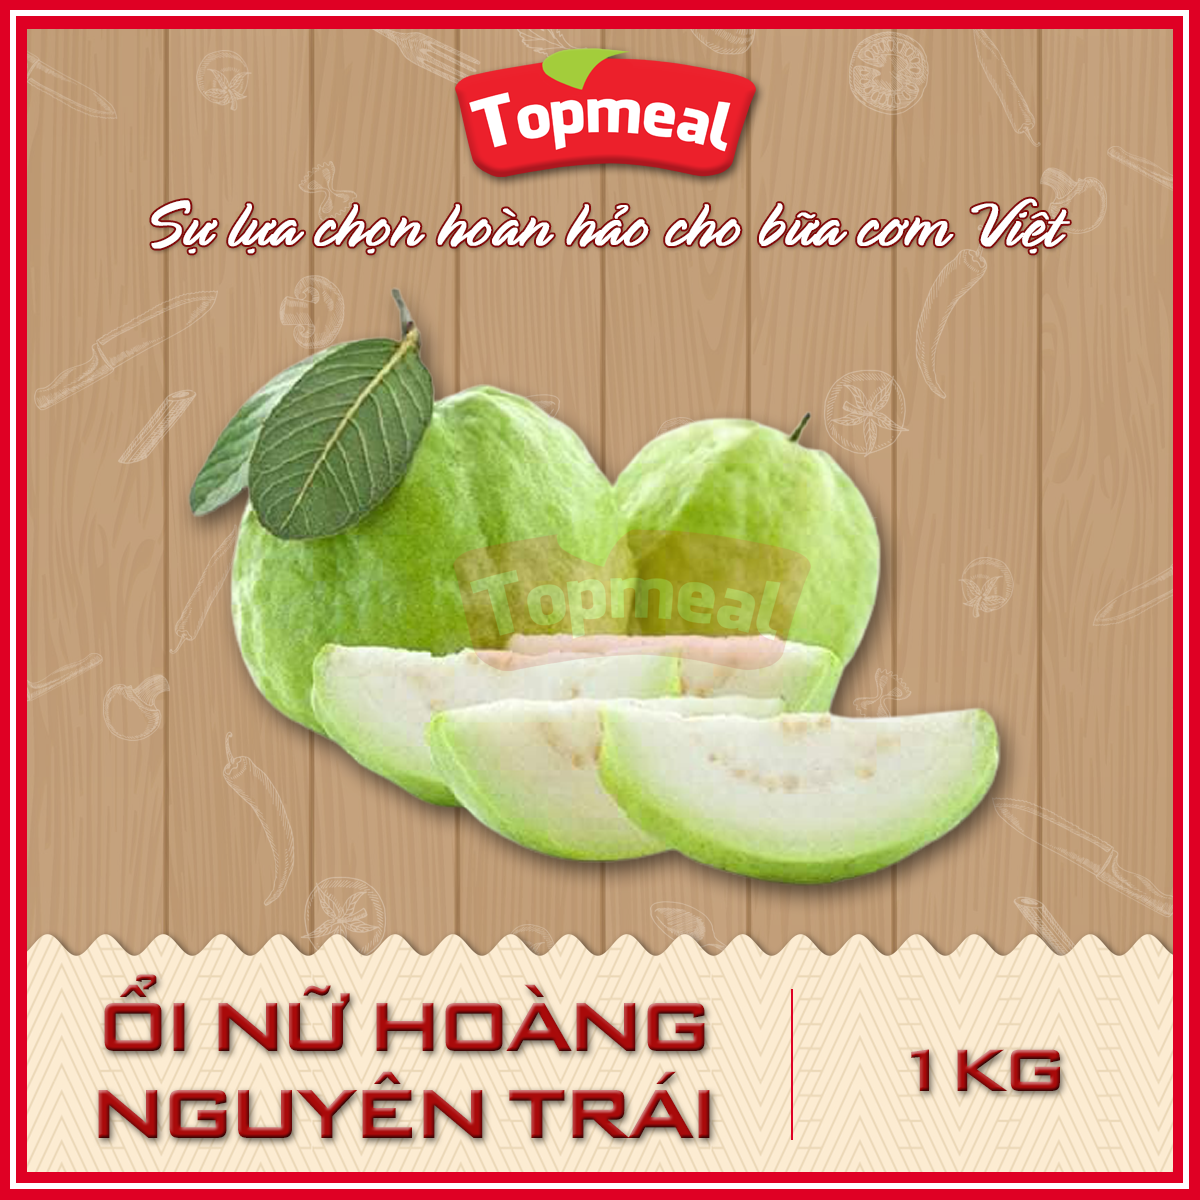 HCM - Ổi nữ hoàng nguyên trái 1kg - Giòn, thơm ngon, ngọt - Giao nhanh